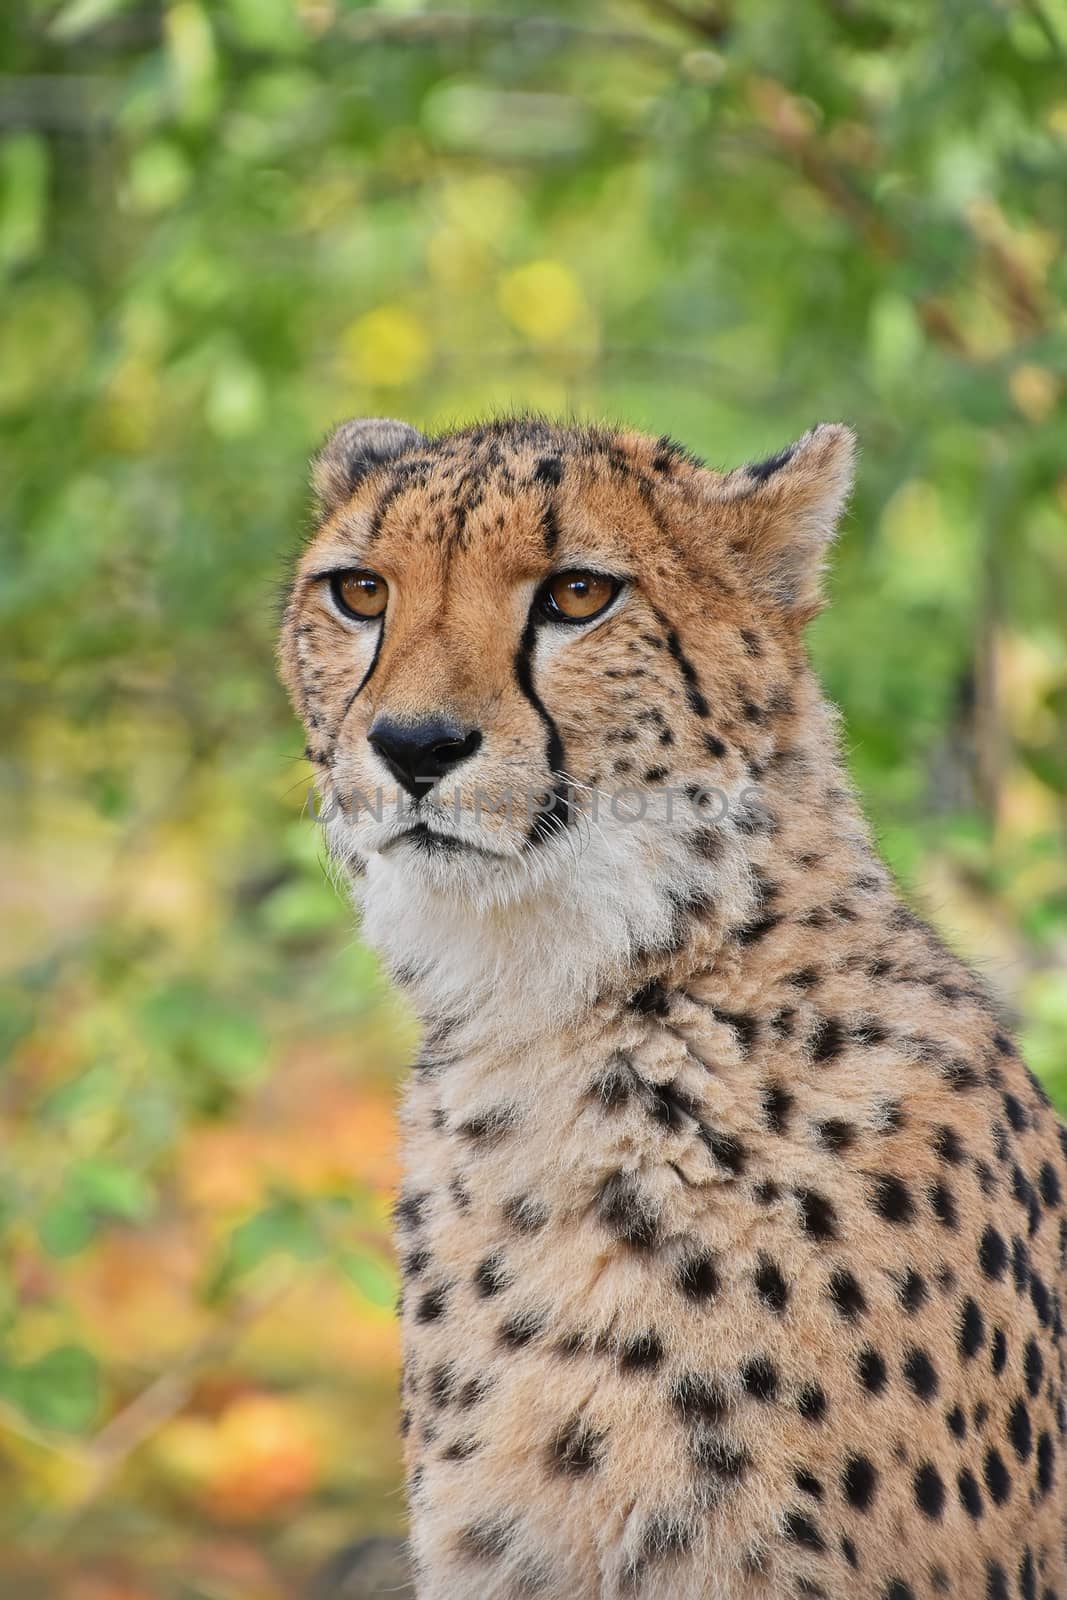 Close up portrait of cheetah (Acinonyx jubatus) looking at camera, low angle view